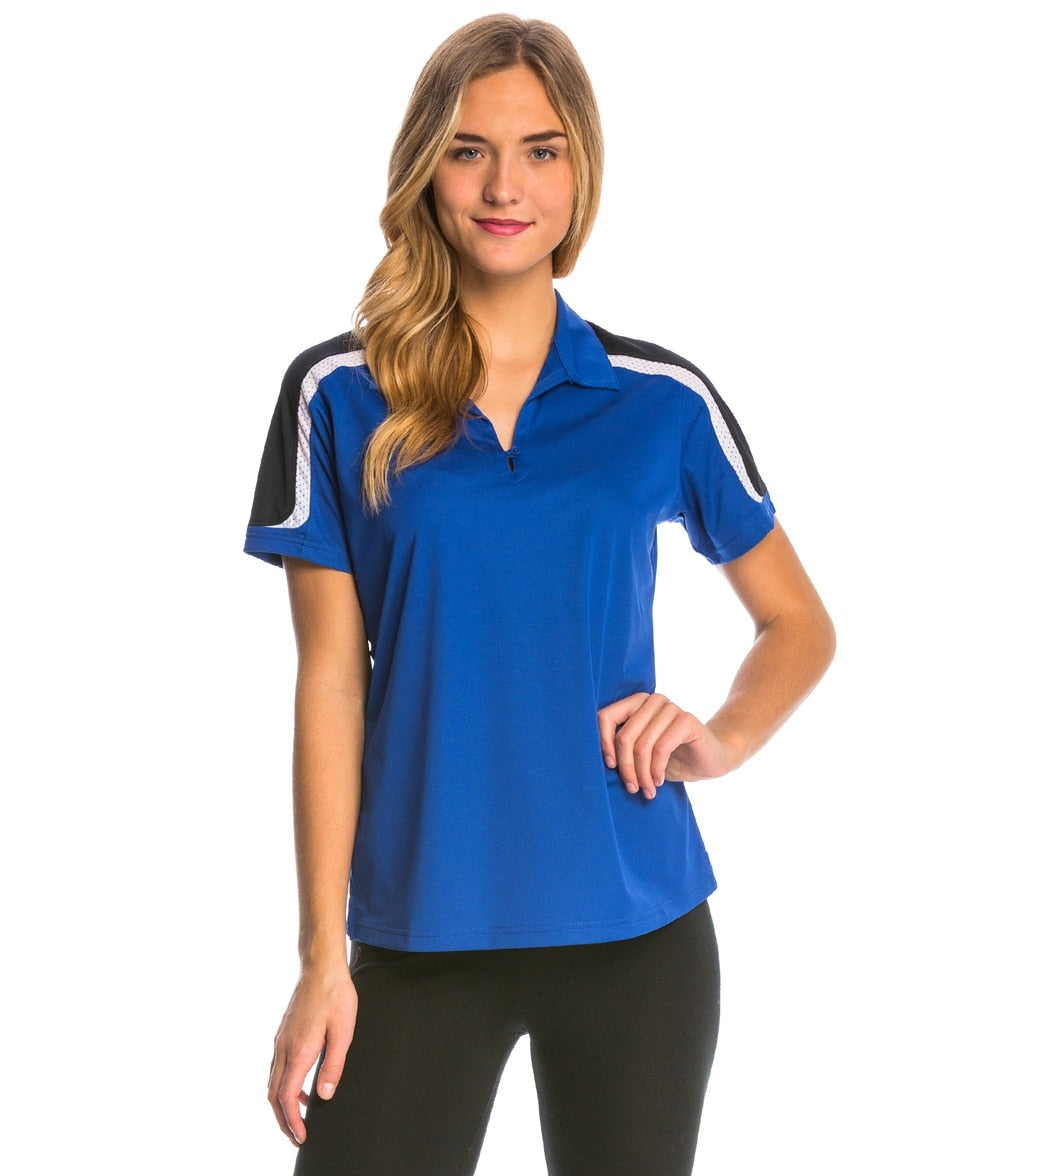 Women's Tech Polo Shirt - True Royal/Black/White 3Xl Polyester - Swimoutlet.com